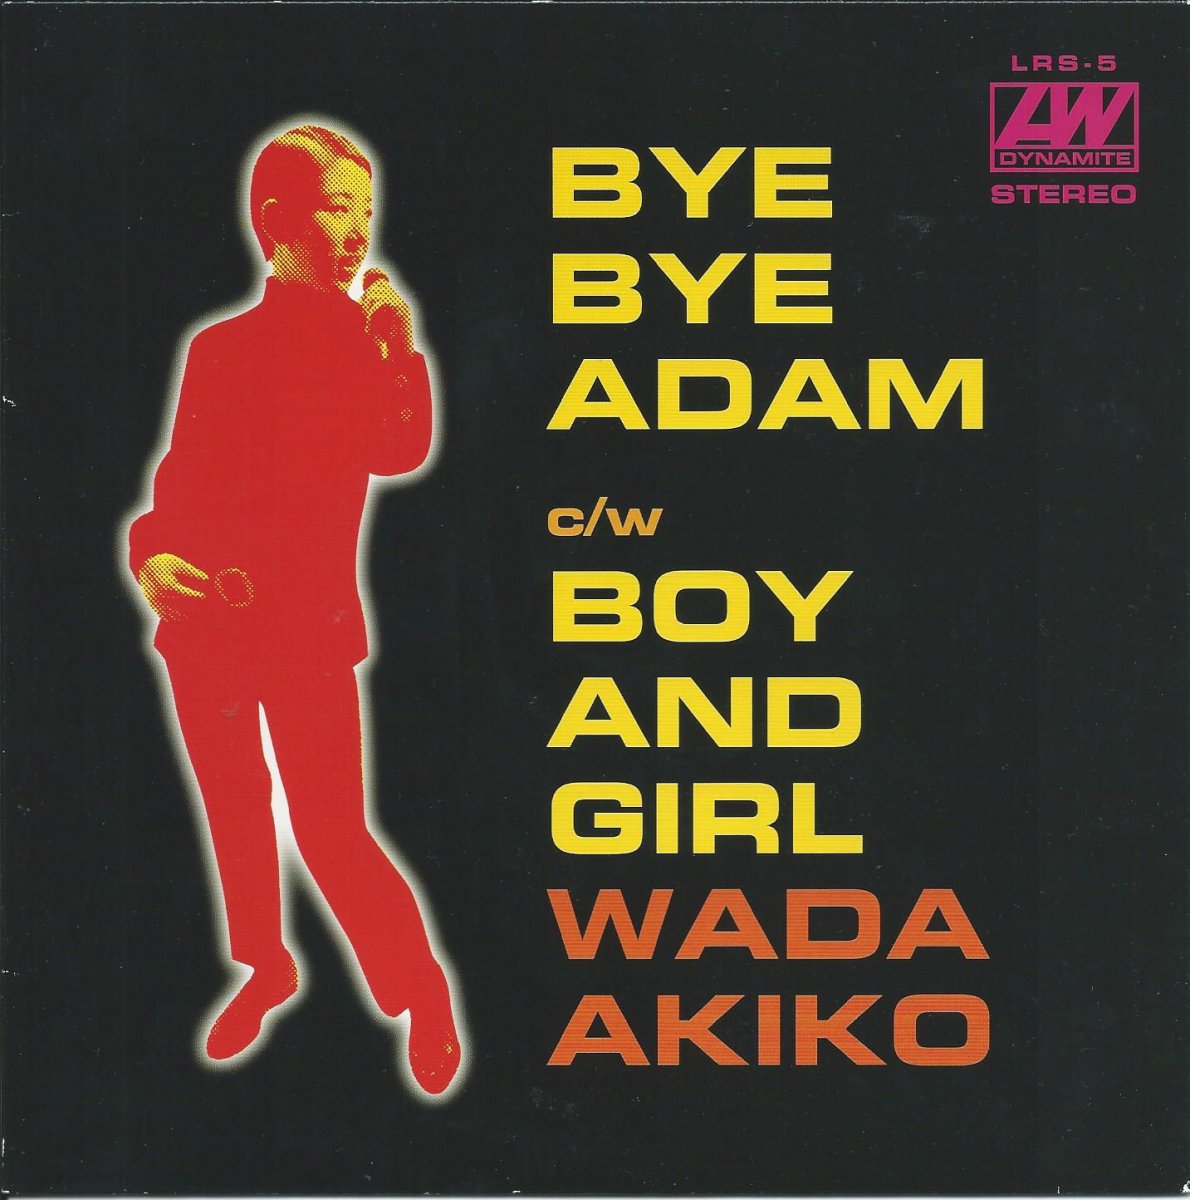 和田アキ子 AKIKO WADA / バイ・バイ・アダム / ボーイ・アンド・ガール (7